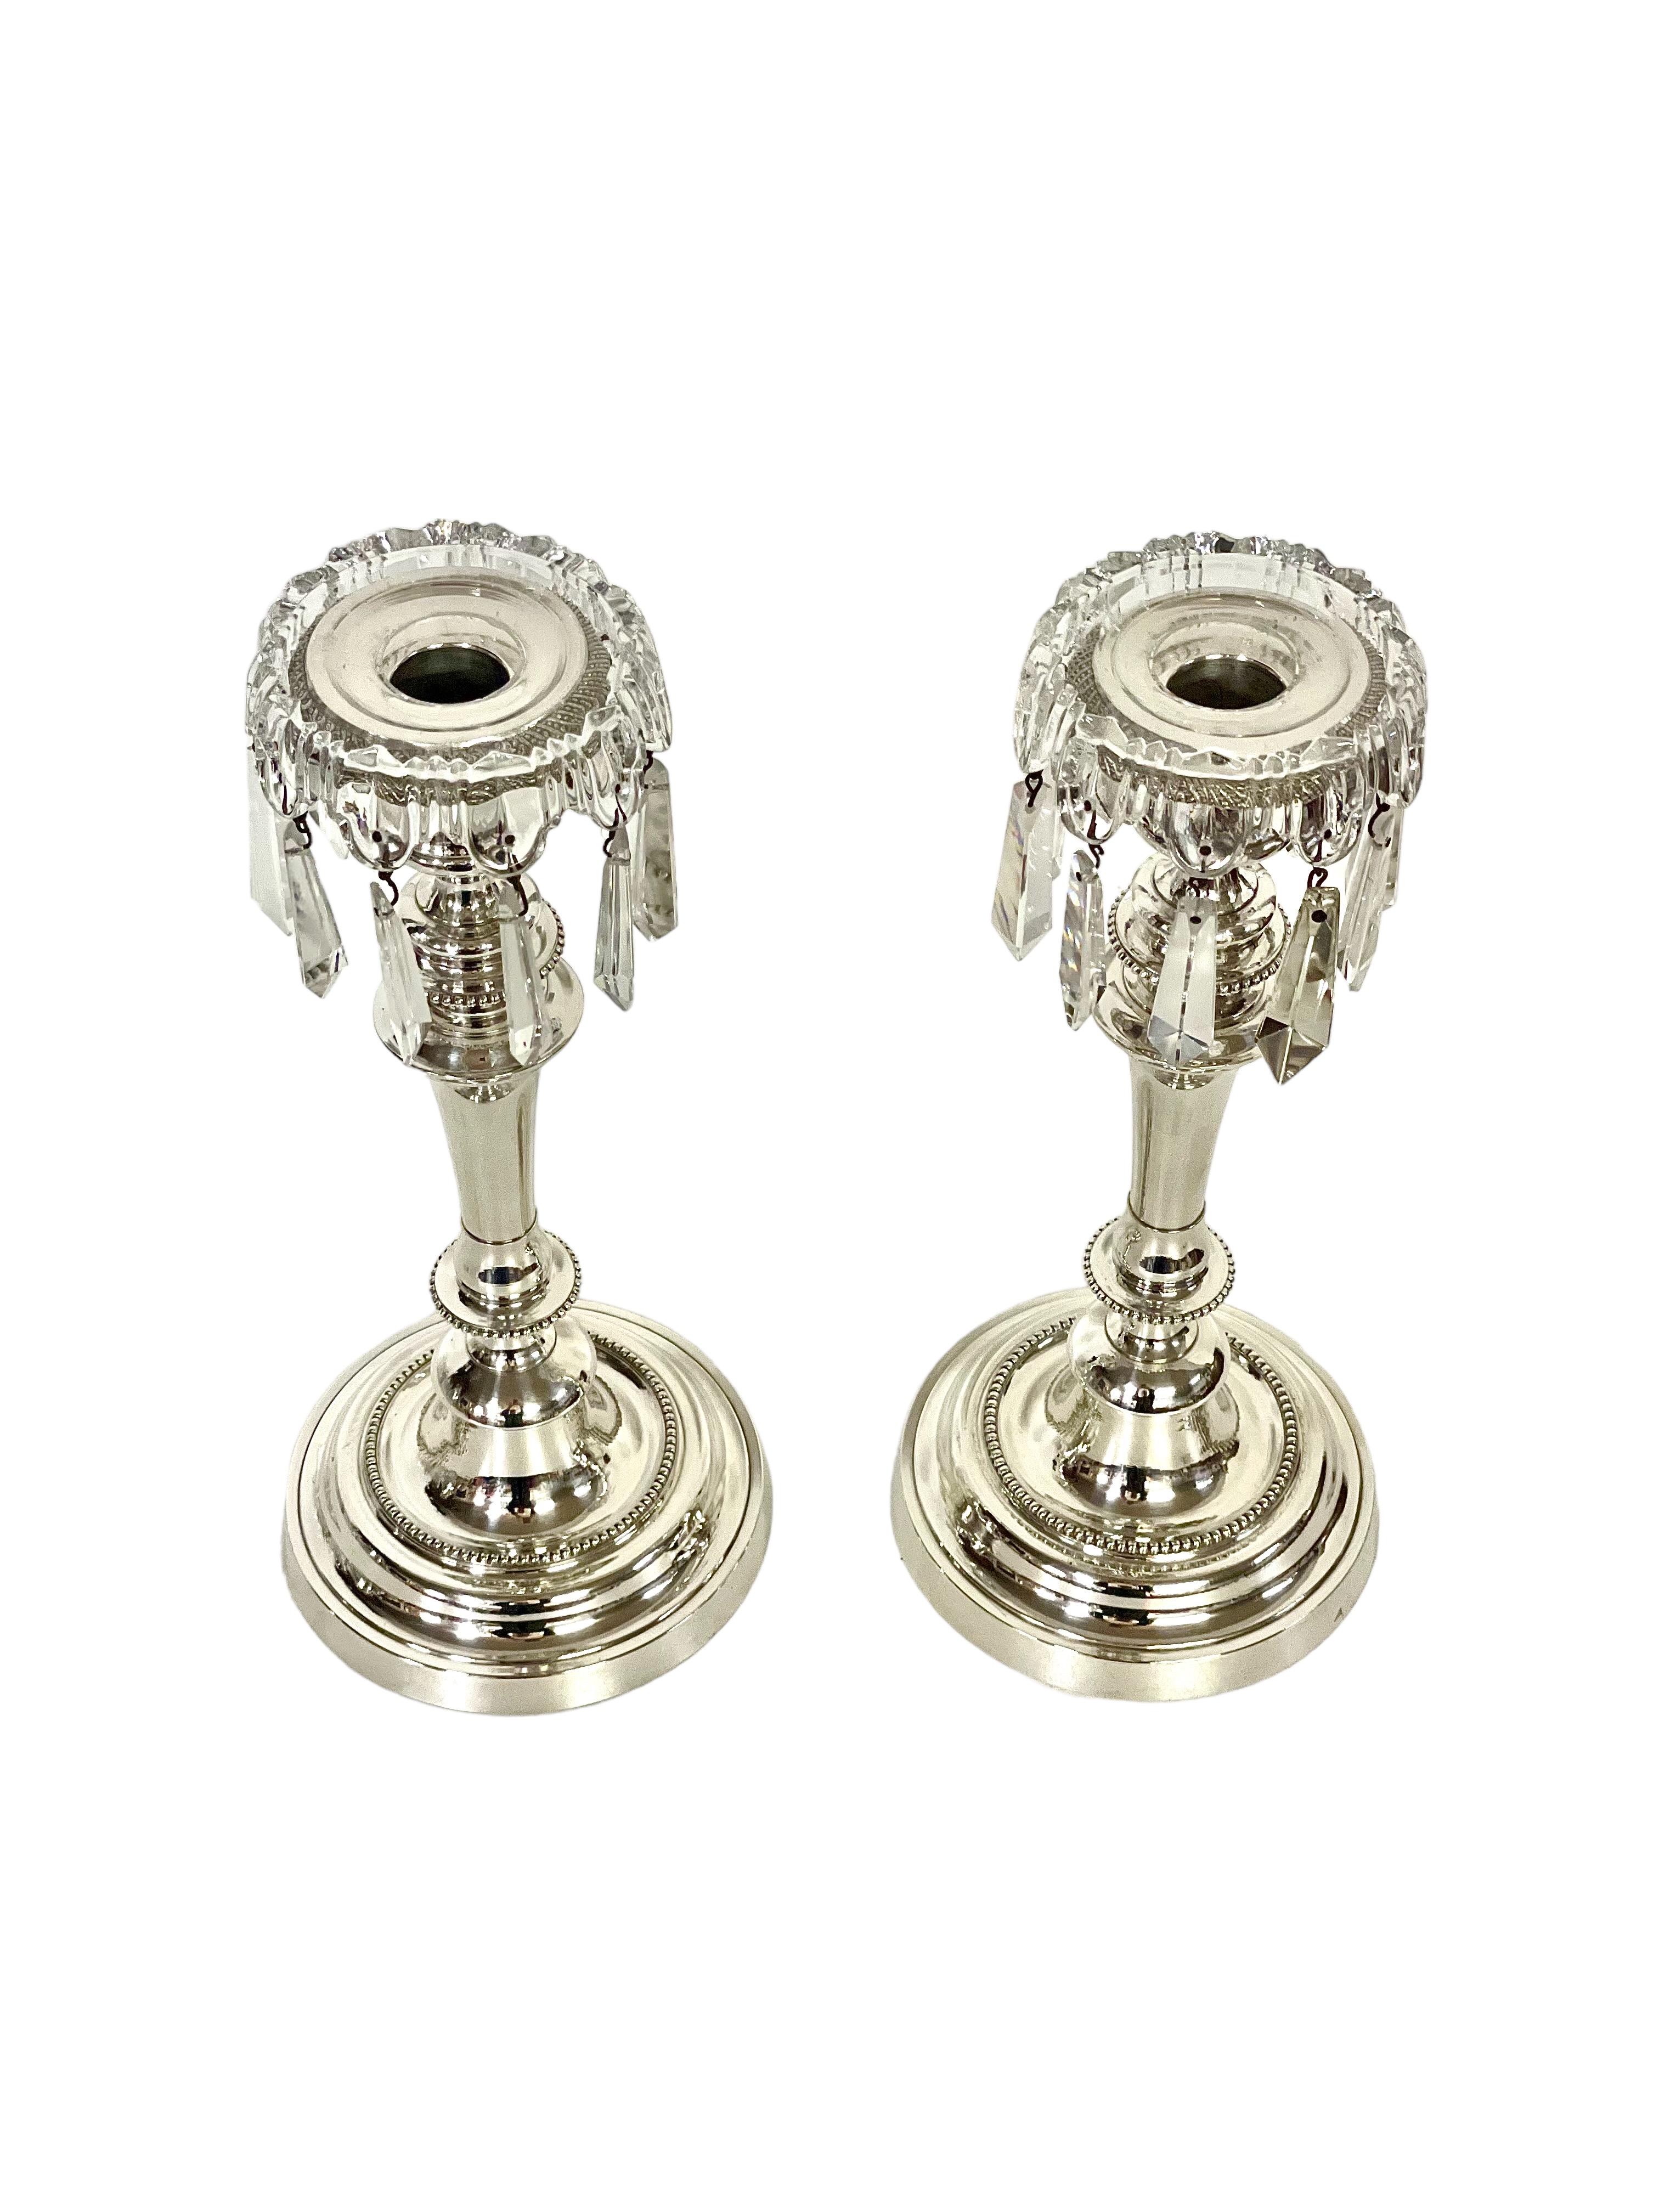 Ein sehr schönes Paar antiker versilberter Kerzenhalter im Louis-XVI-Stil aus dem 19. Jahrhundert, die jeweils mit einer Tropfschale aus geschliffenem Kristall und einem glitzernden Kranz aus Kristallquasten versehen sind. Die Kerzenhalter sind